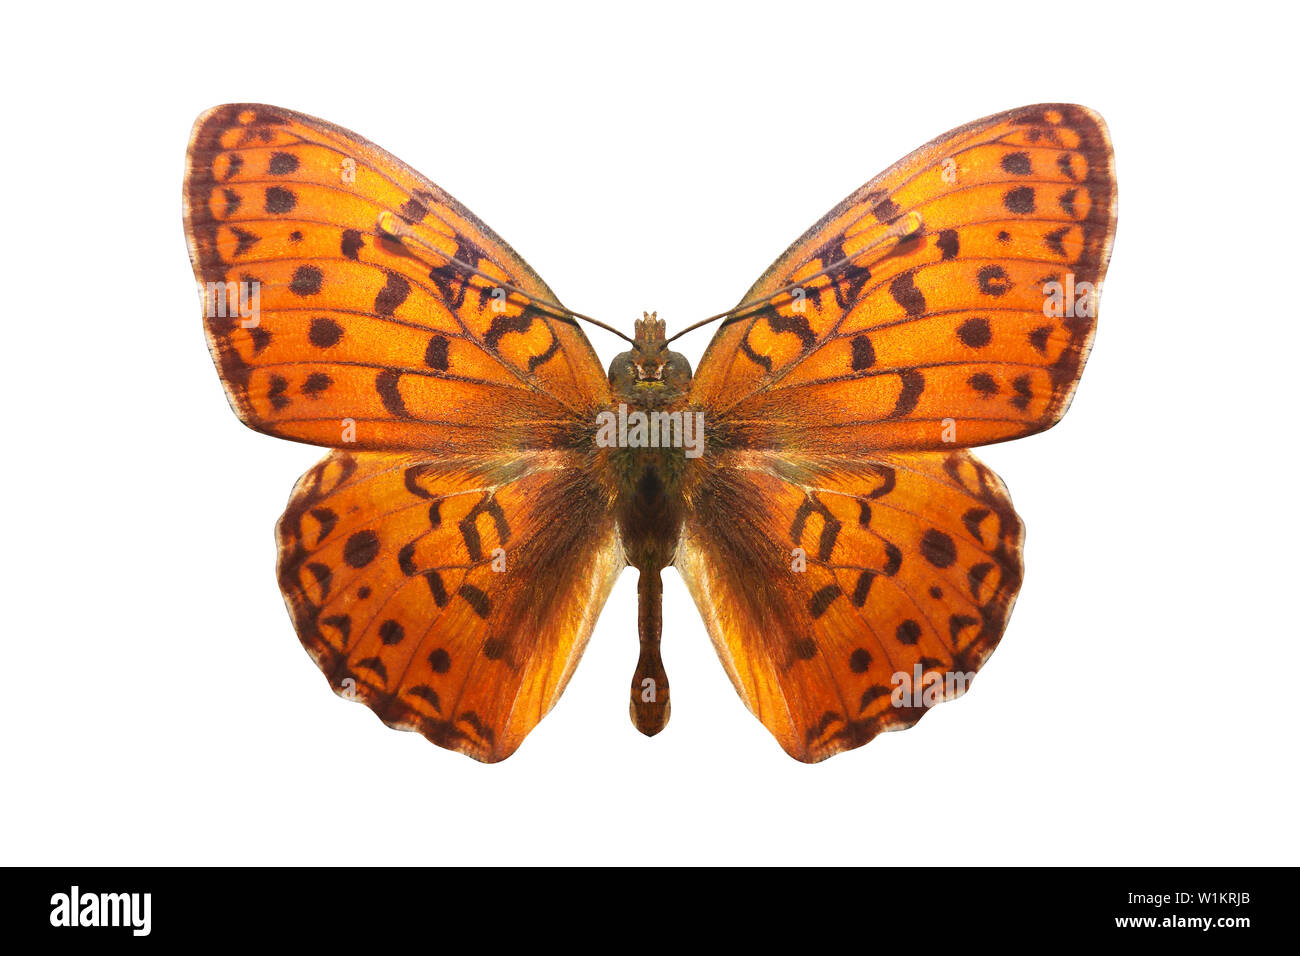 Farfalla arancione. razza Argynnis niobe. isolato su sfondo bianco Foto Stock